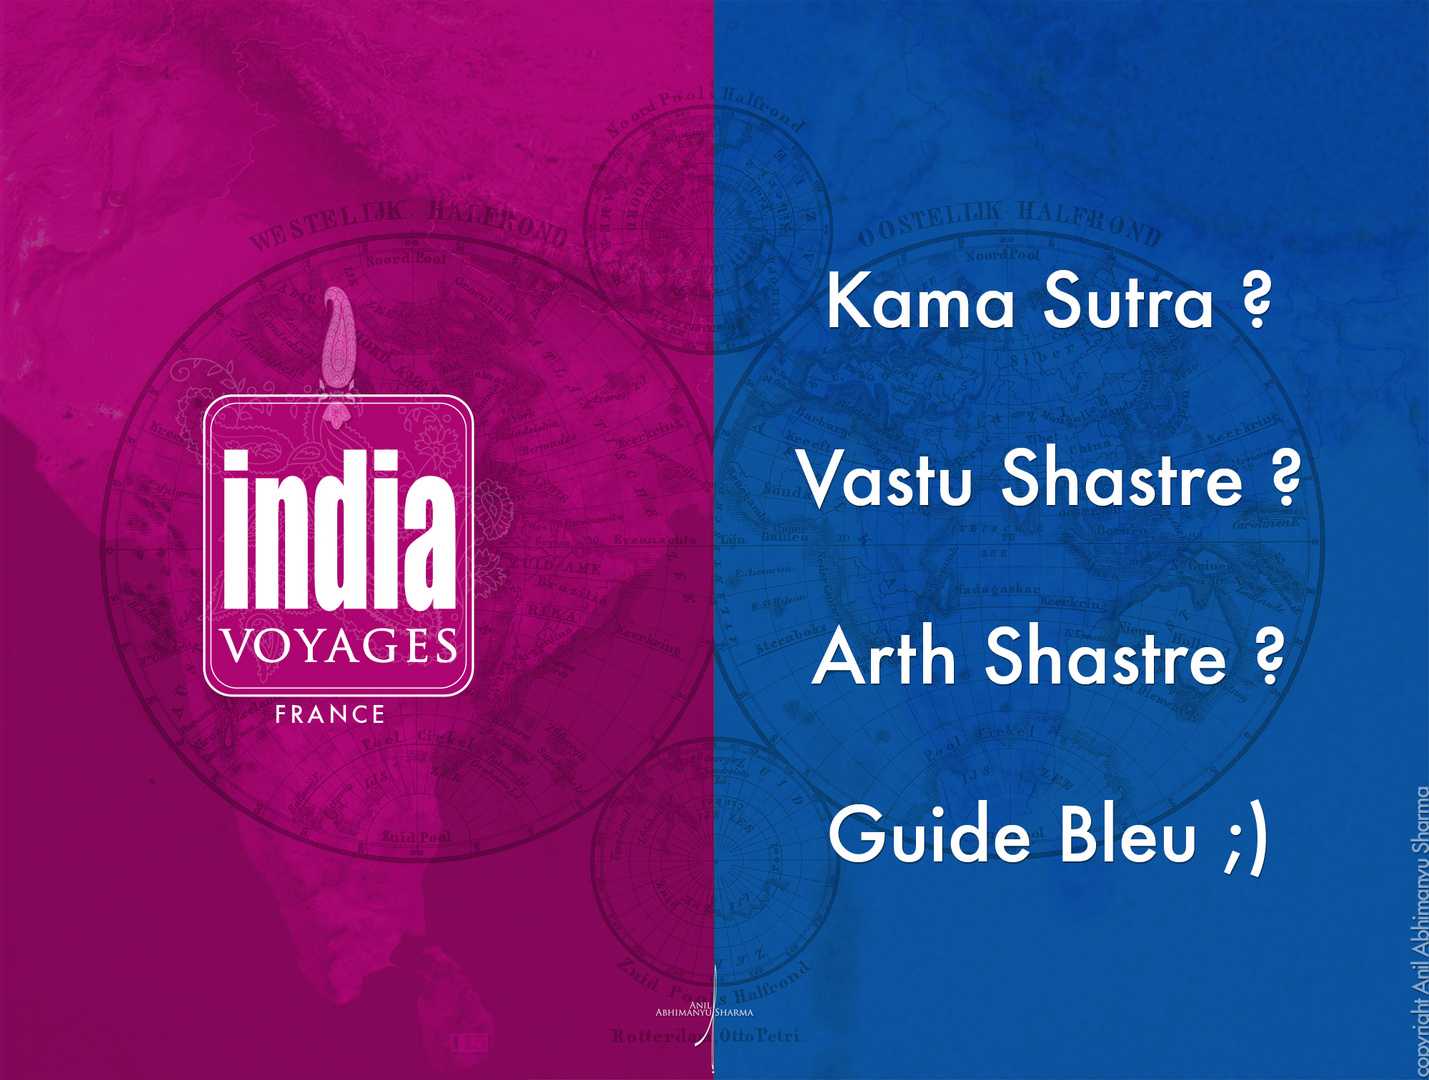 India Voyages France_Guide Bleu ;)